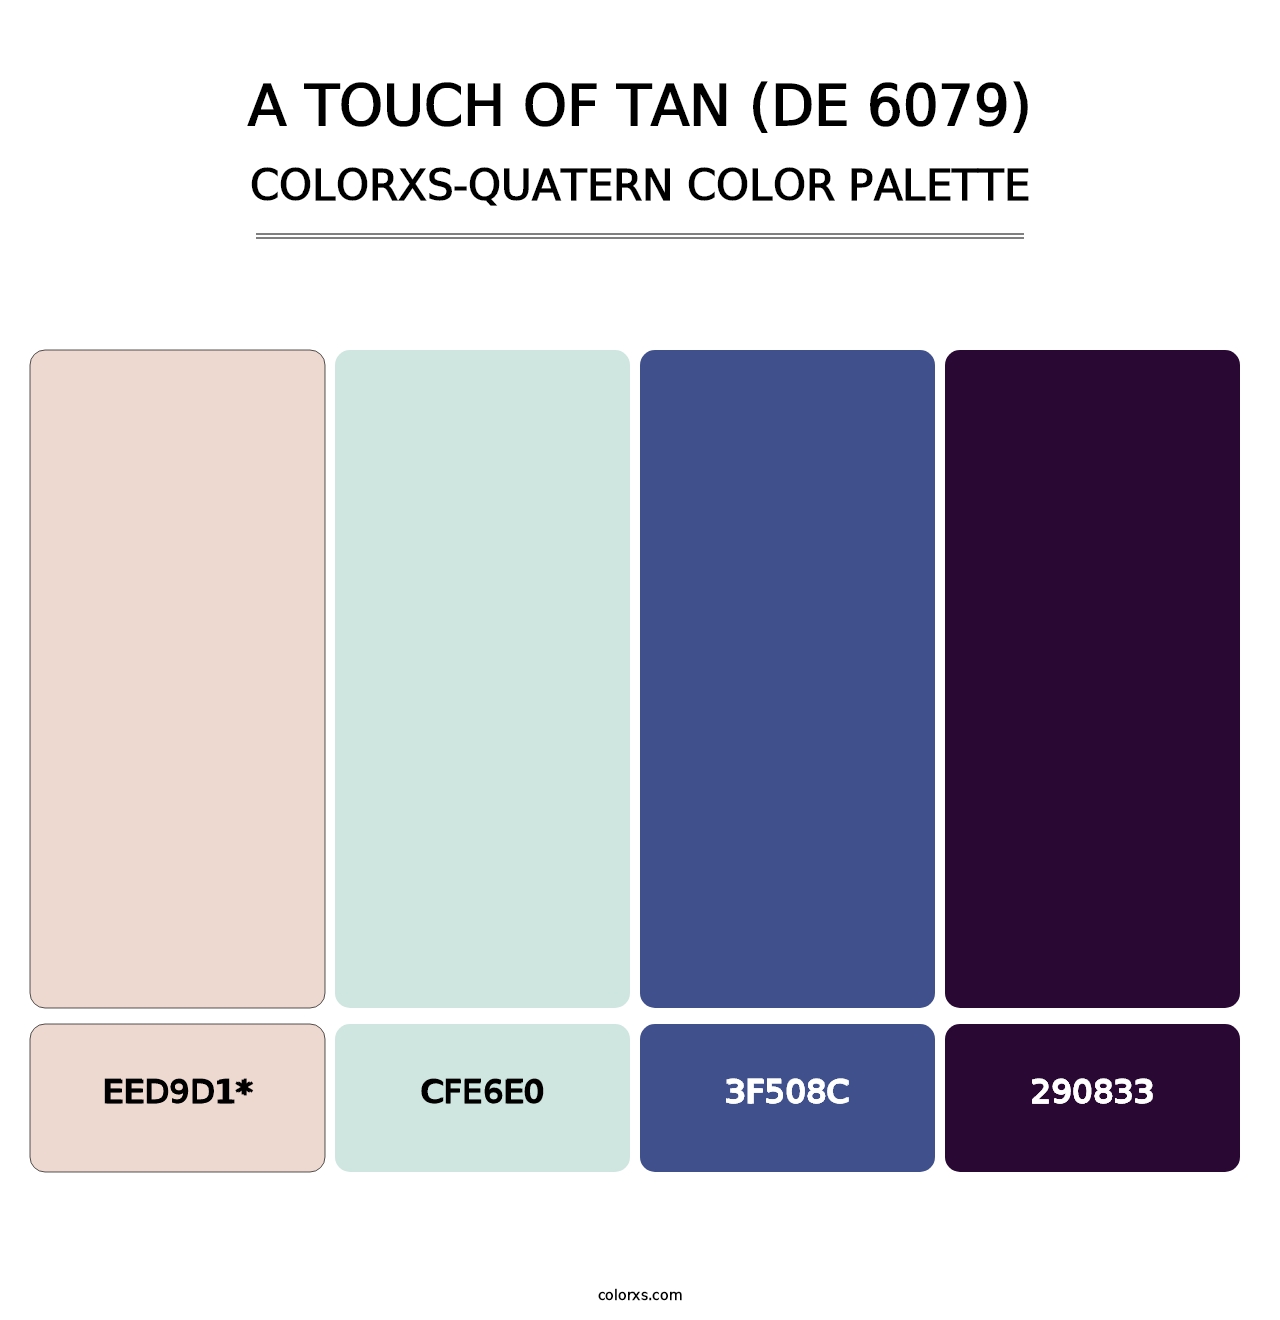 A Touch of Tan (DE 6079) - Colorxs Quatern Palette